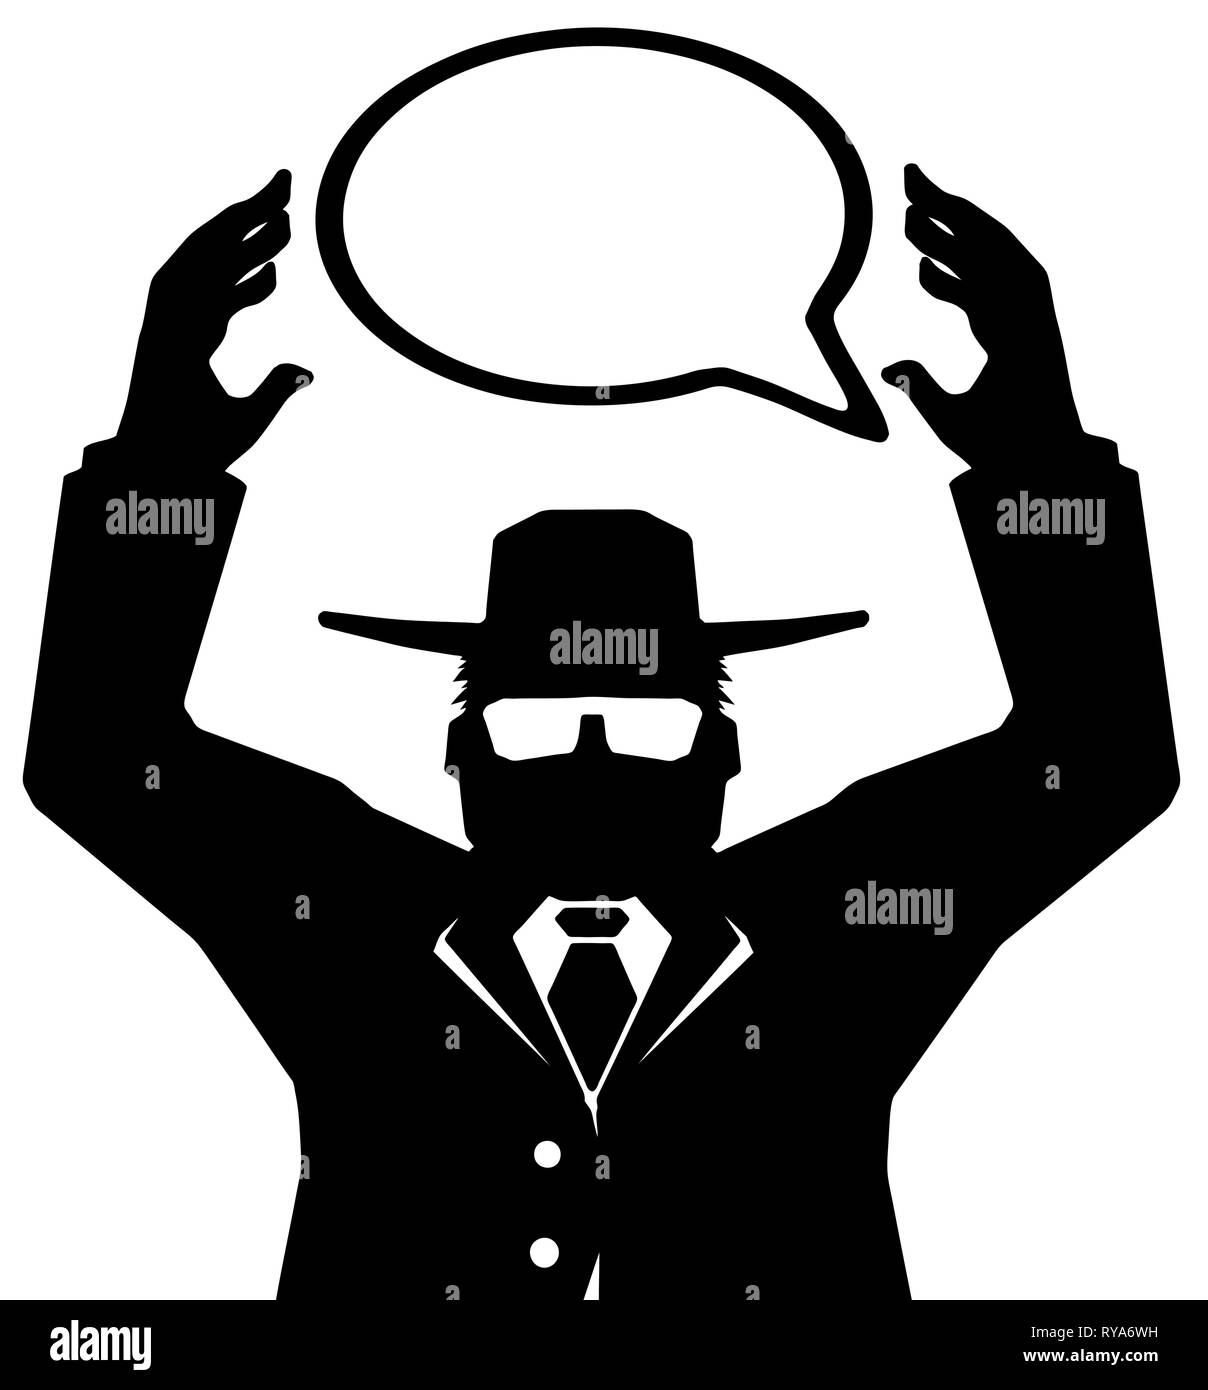 La figure de l'agent noir pochoir stylisé holding speech bubble, illustration vectorielle, vertical, isolé Illustration de Vecteur